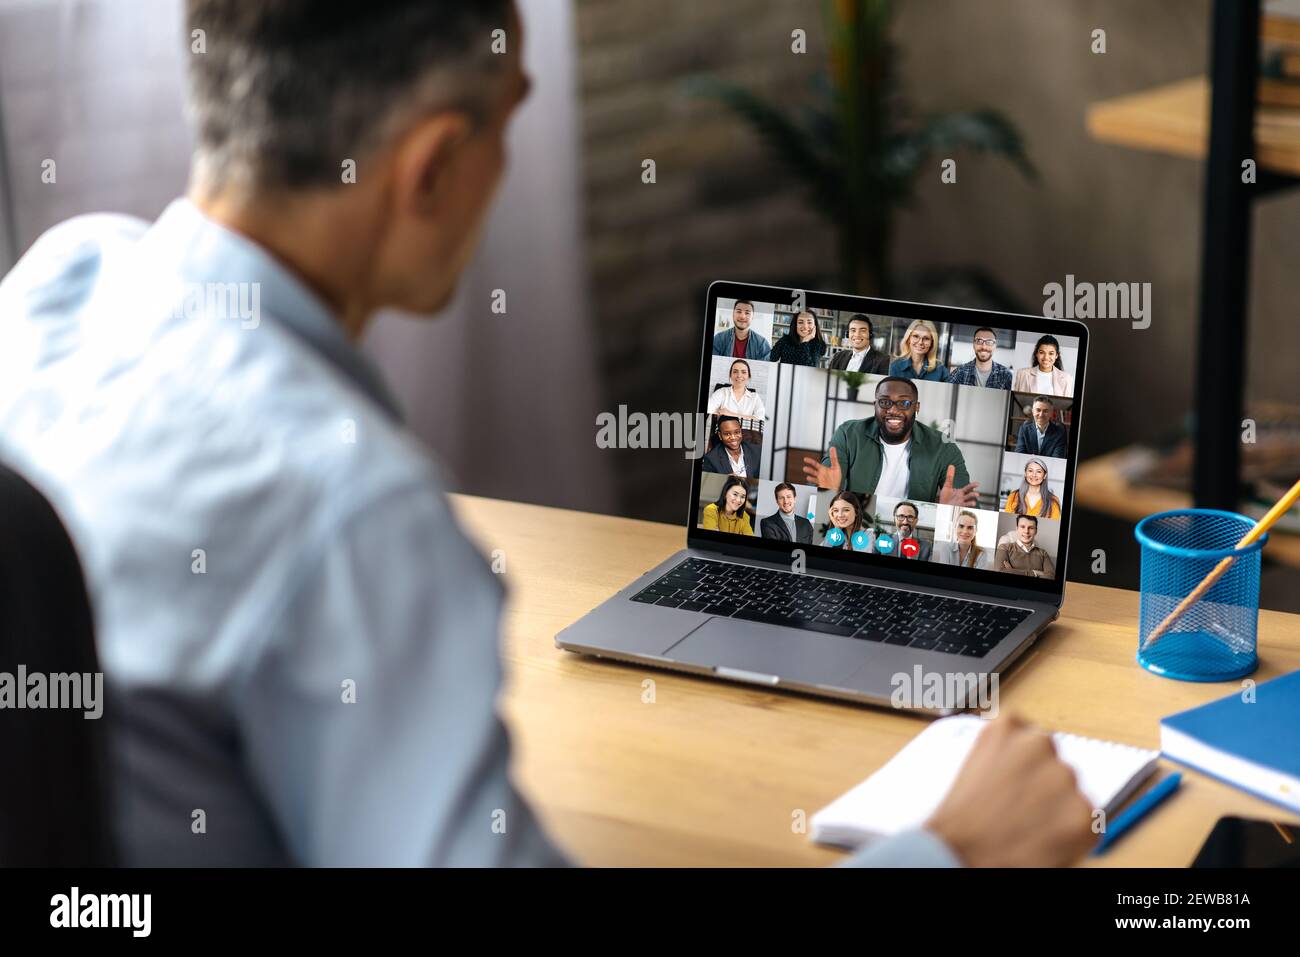 Comunicazione video online. Un uomo d'affari adulto di successo usa un laptop per videoconferenza con i soci d'affari. Un manager o un ceo è seduto alla sua scrivania e sta parlando in videochiamata con i colleghi Foto Stock